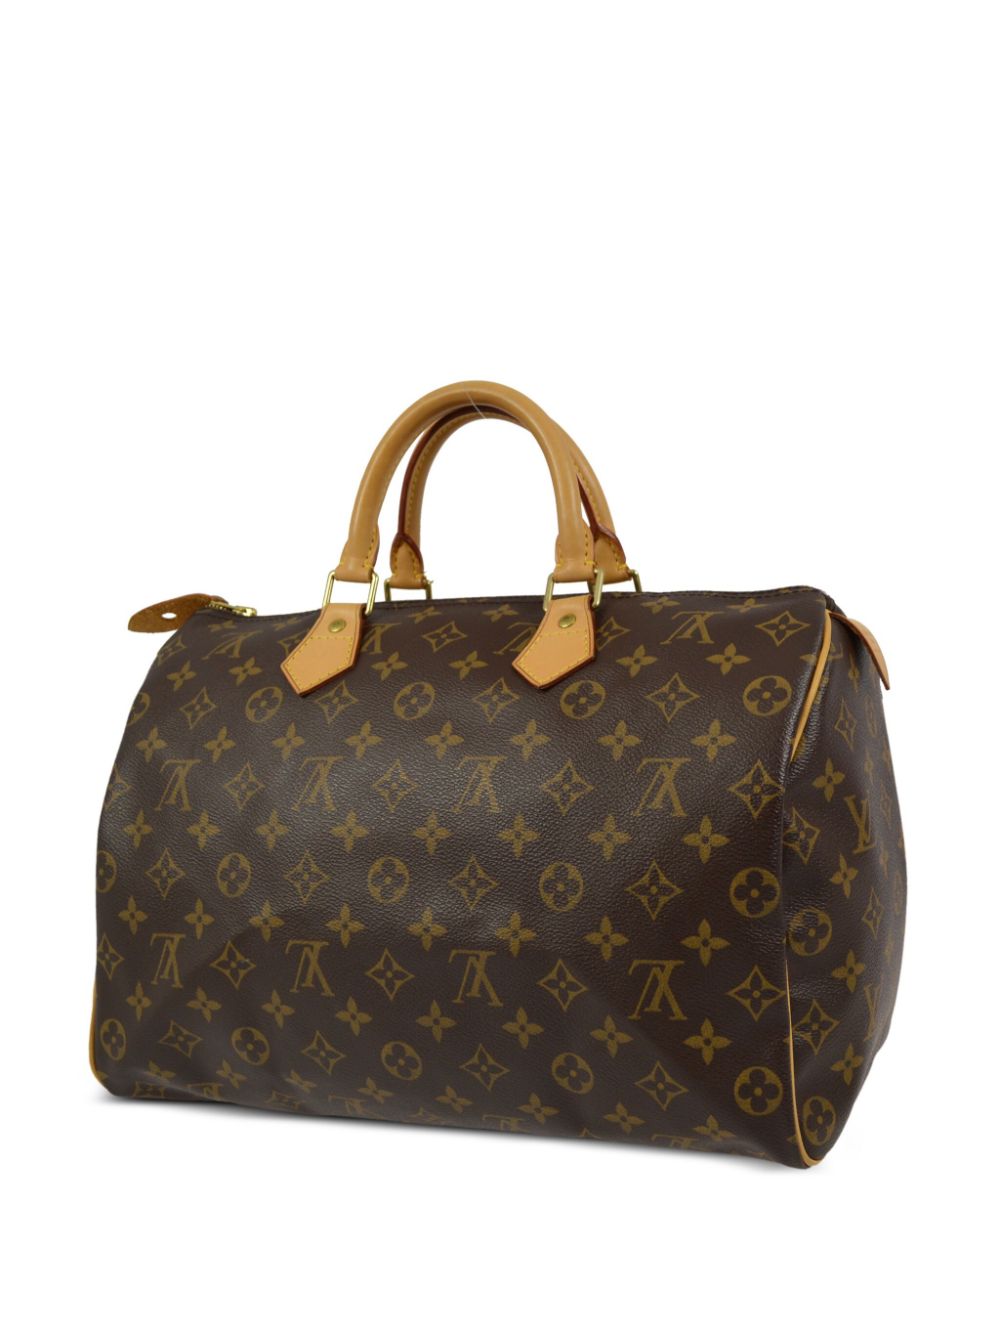 Louis Vuitton Pre-Owned 2008 Speedy 35 handbag - Bruin